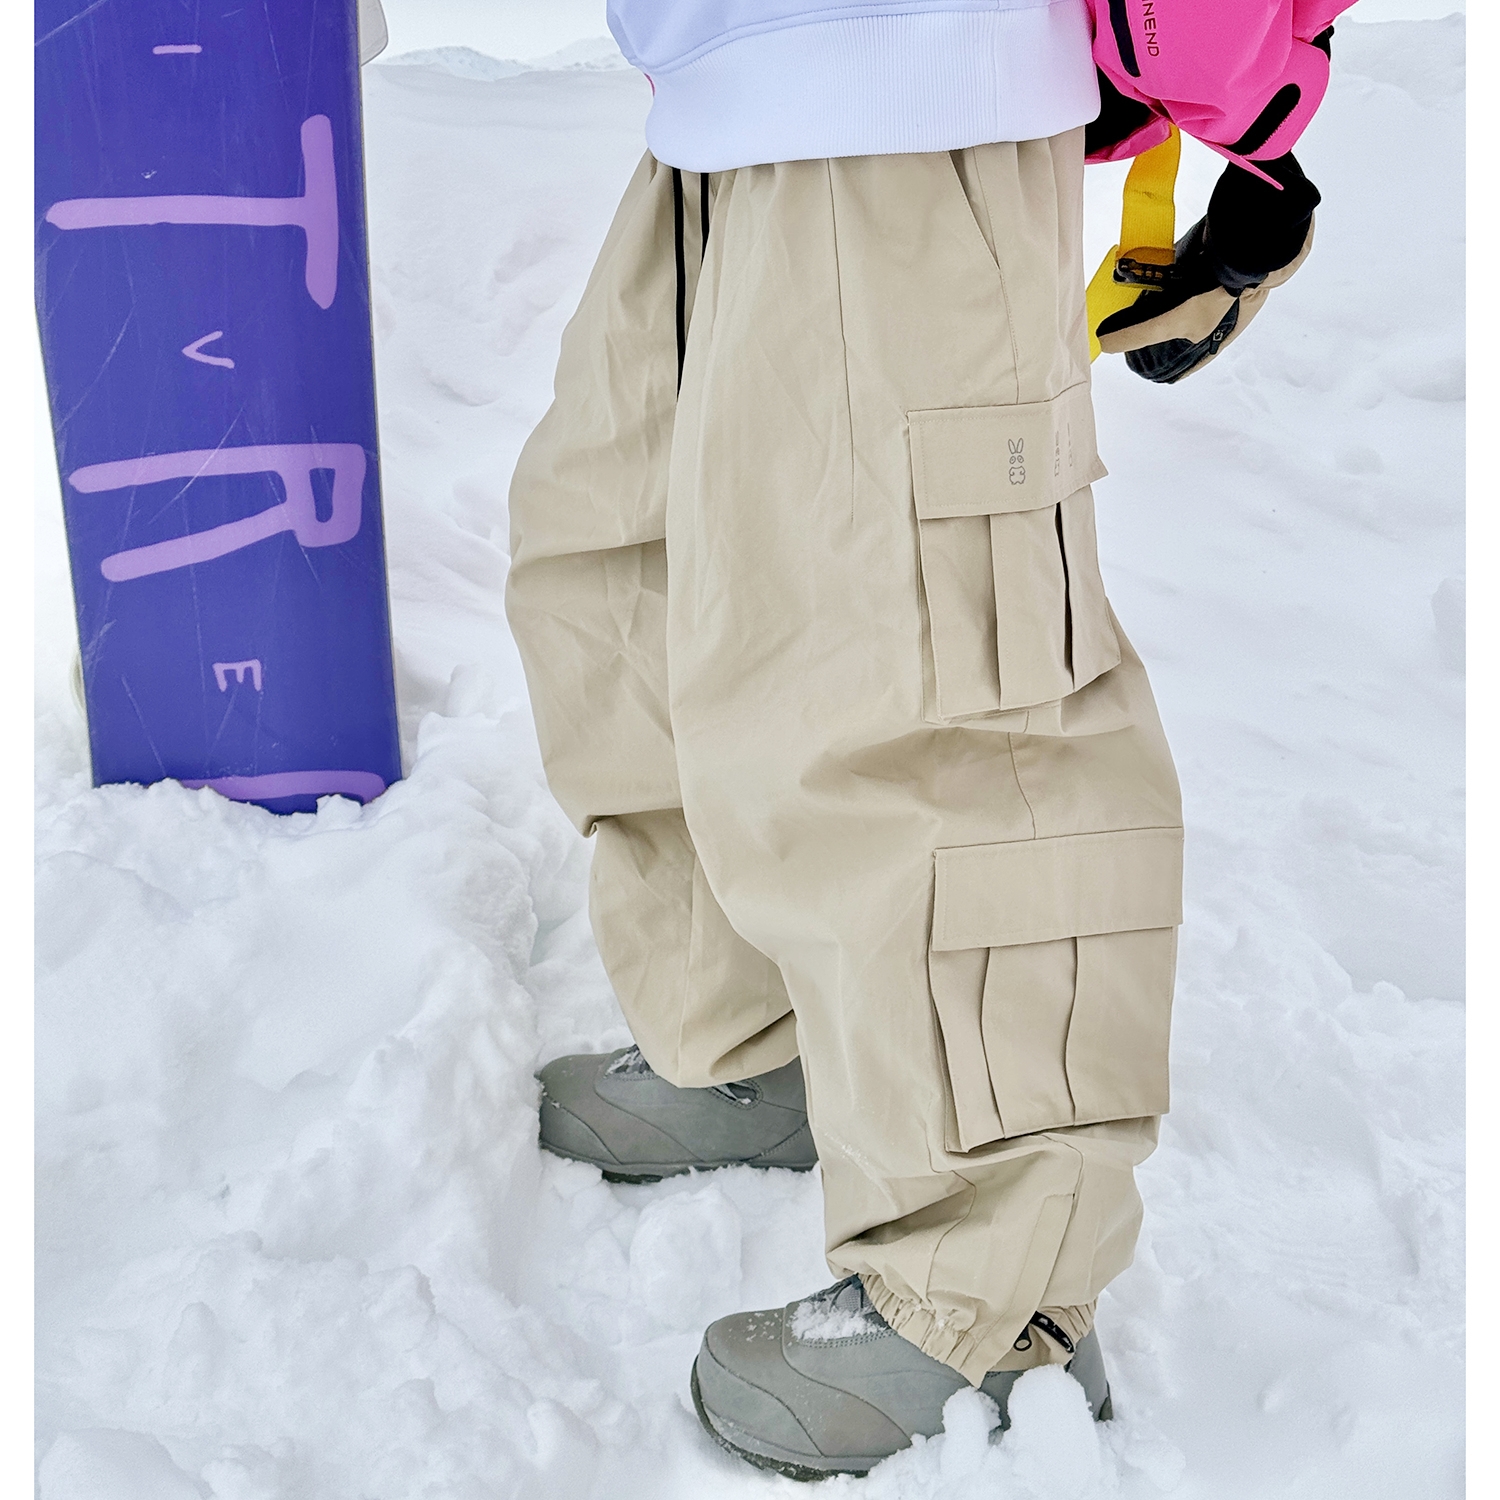 Snowbit冬用の大きいサイズのスノーボードパンツ、男女兼用、ゆったり、厚みがあり、暖かく、防水性と通気性に優れたカップル向け